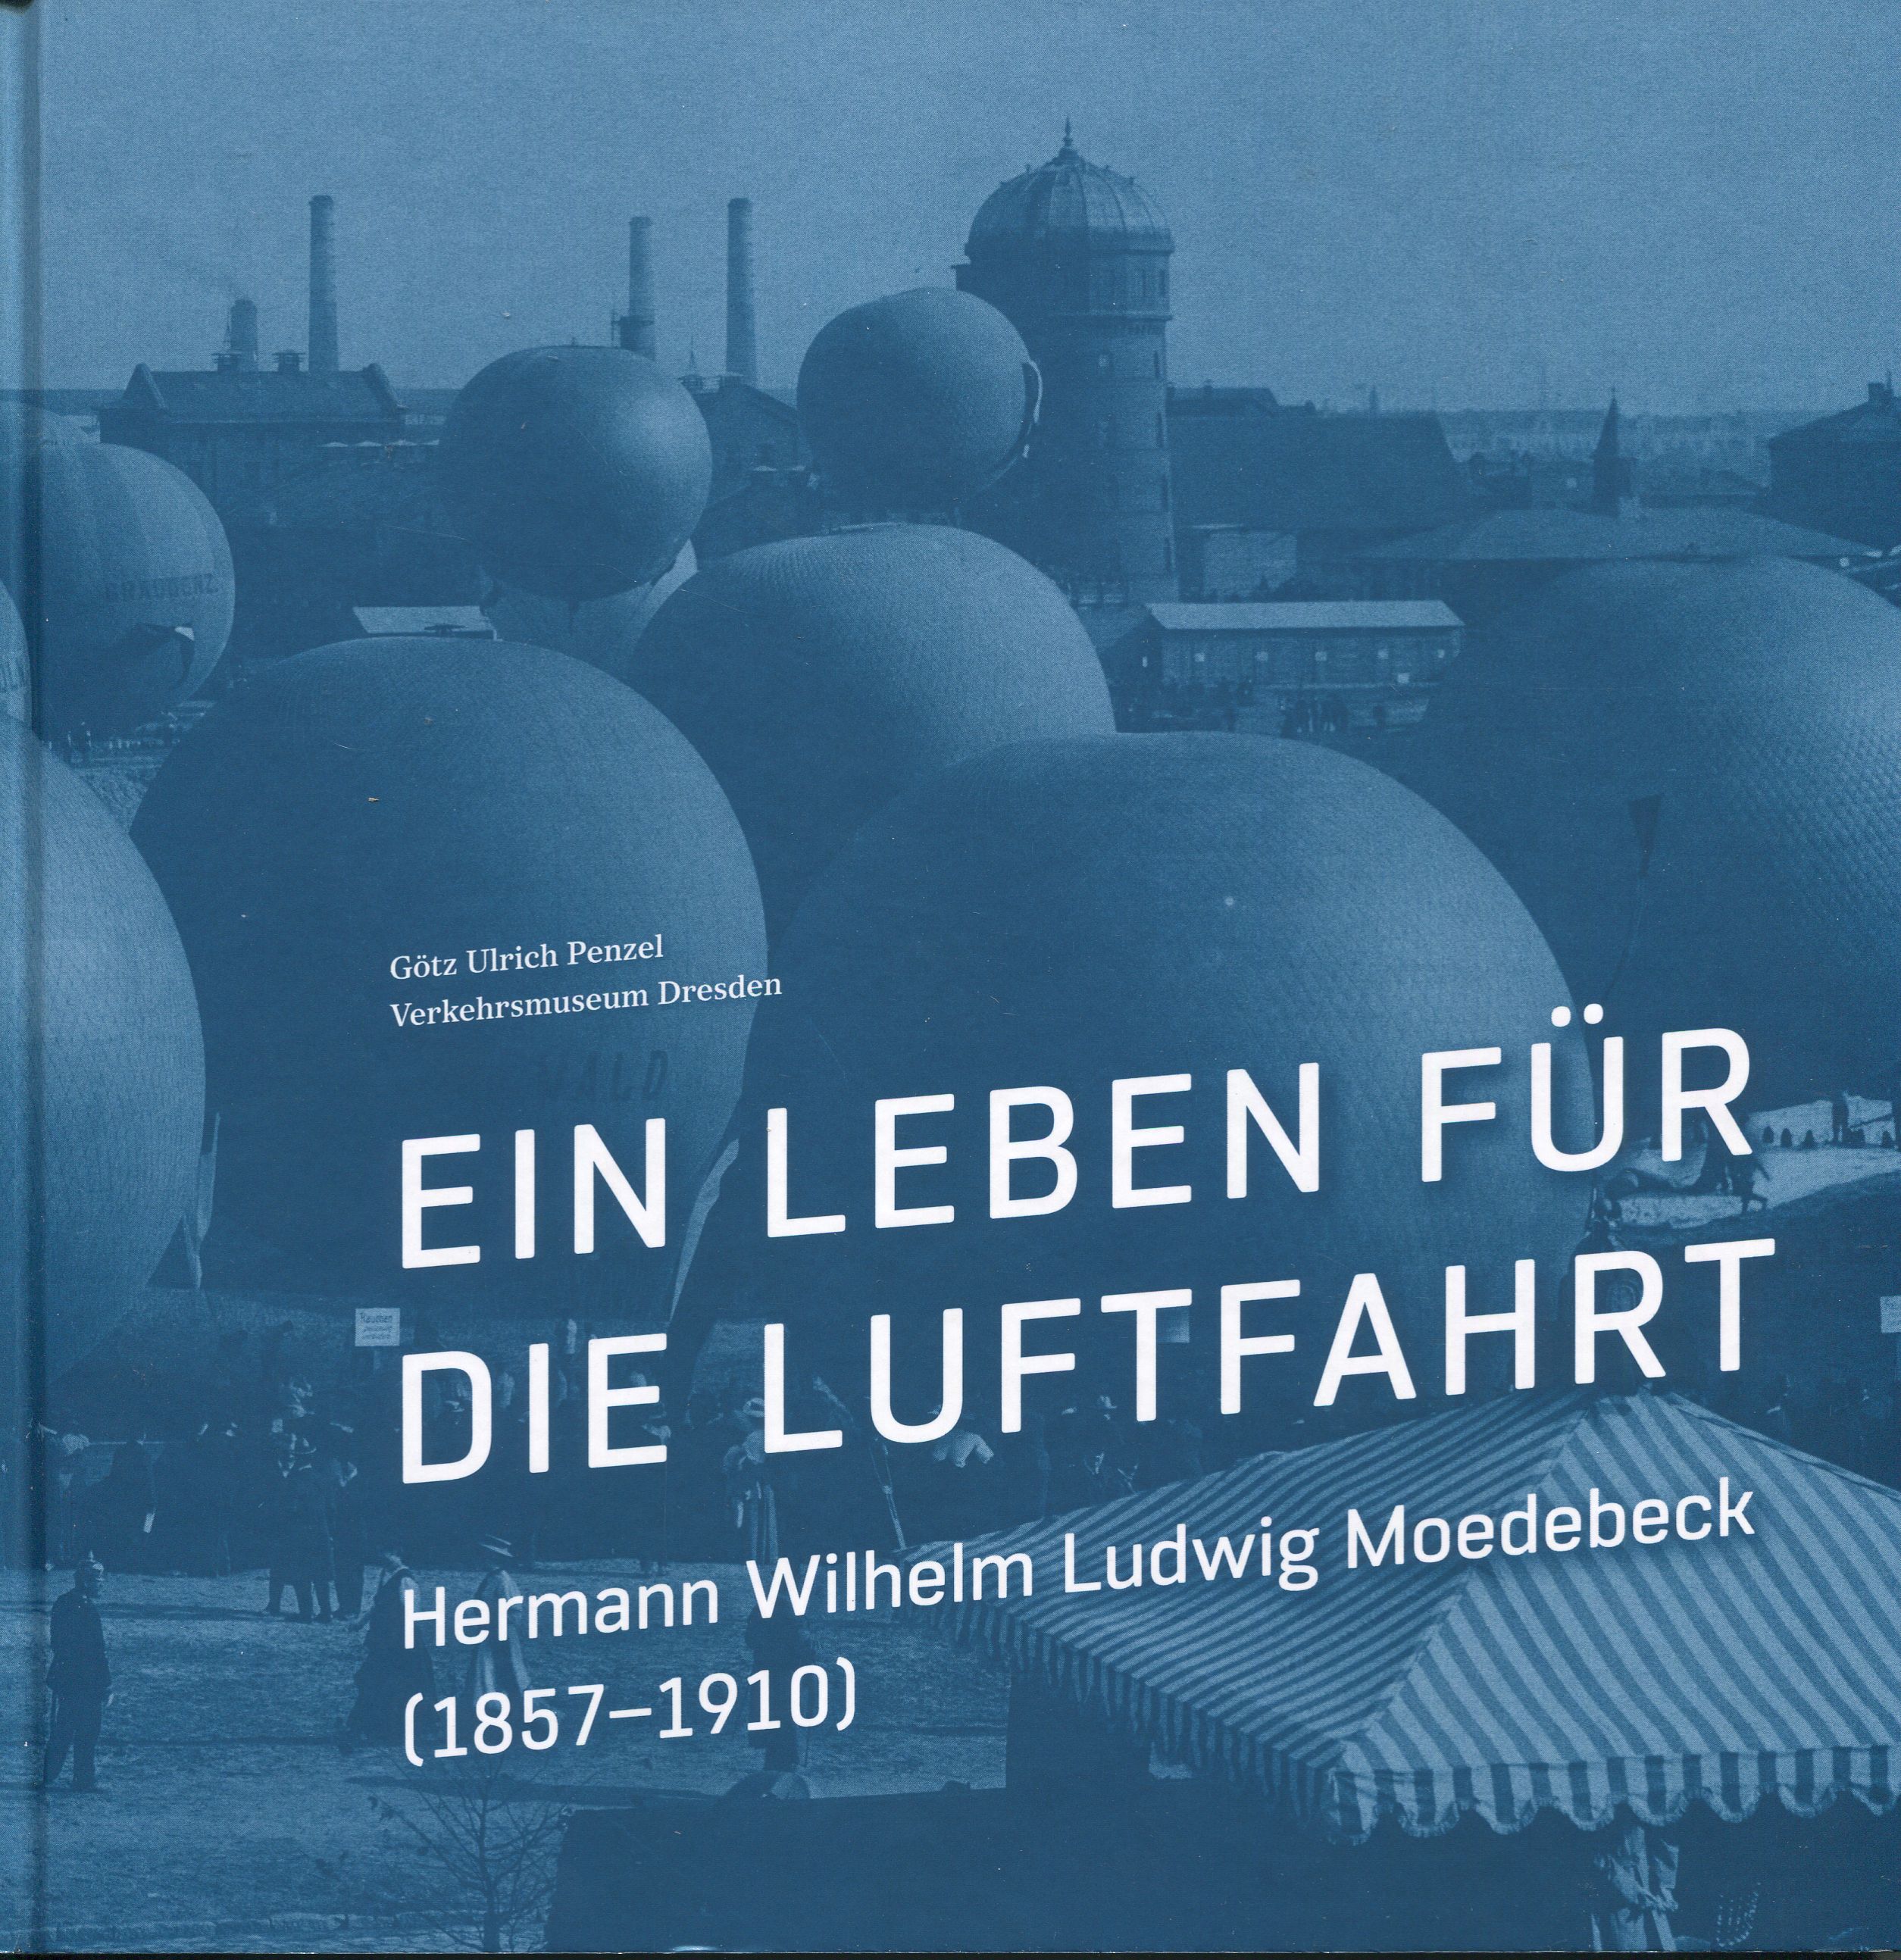 Buchcover: „Ein Leben für die Luftfahrt – Hermann Wilhelm Ludwig Moedebeck (1857 – 1910)“, Veröffentlichung Verkehrsmuseum Dresden, Götz Ulrich Penzel